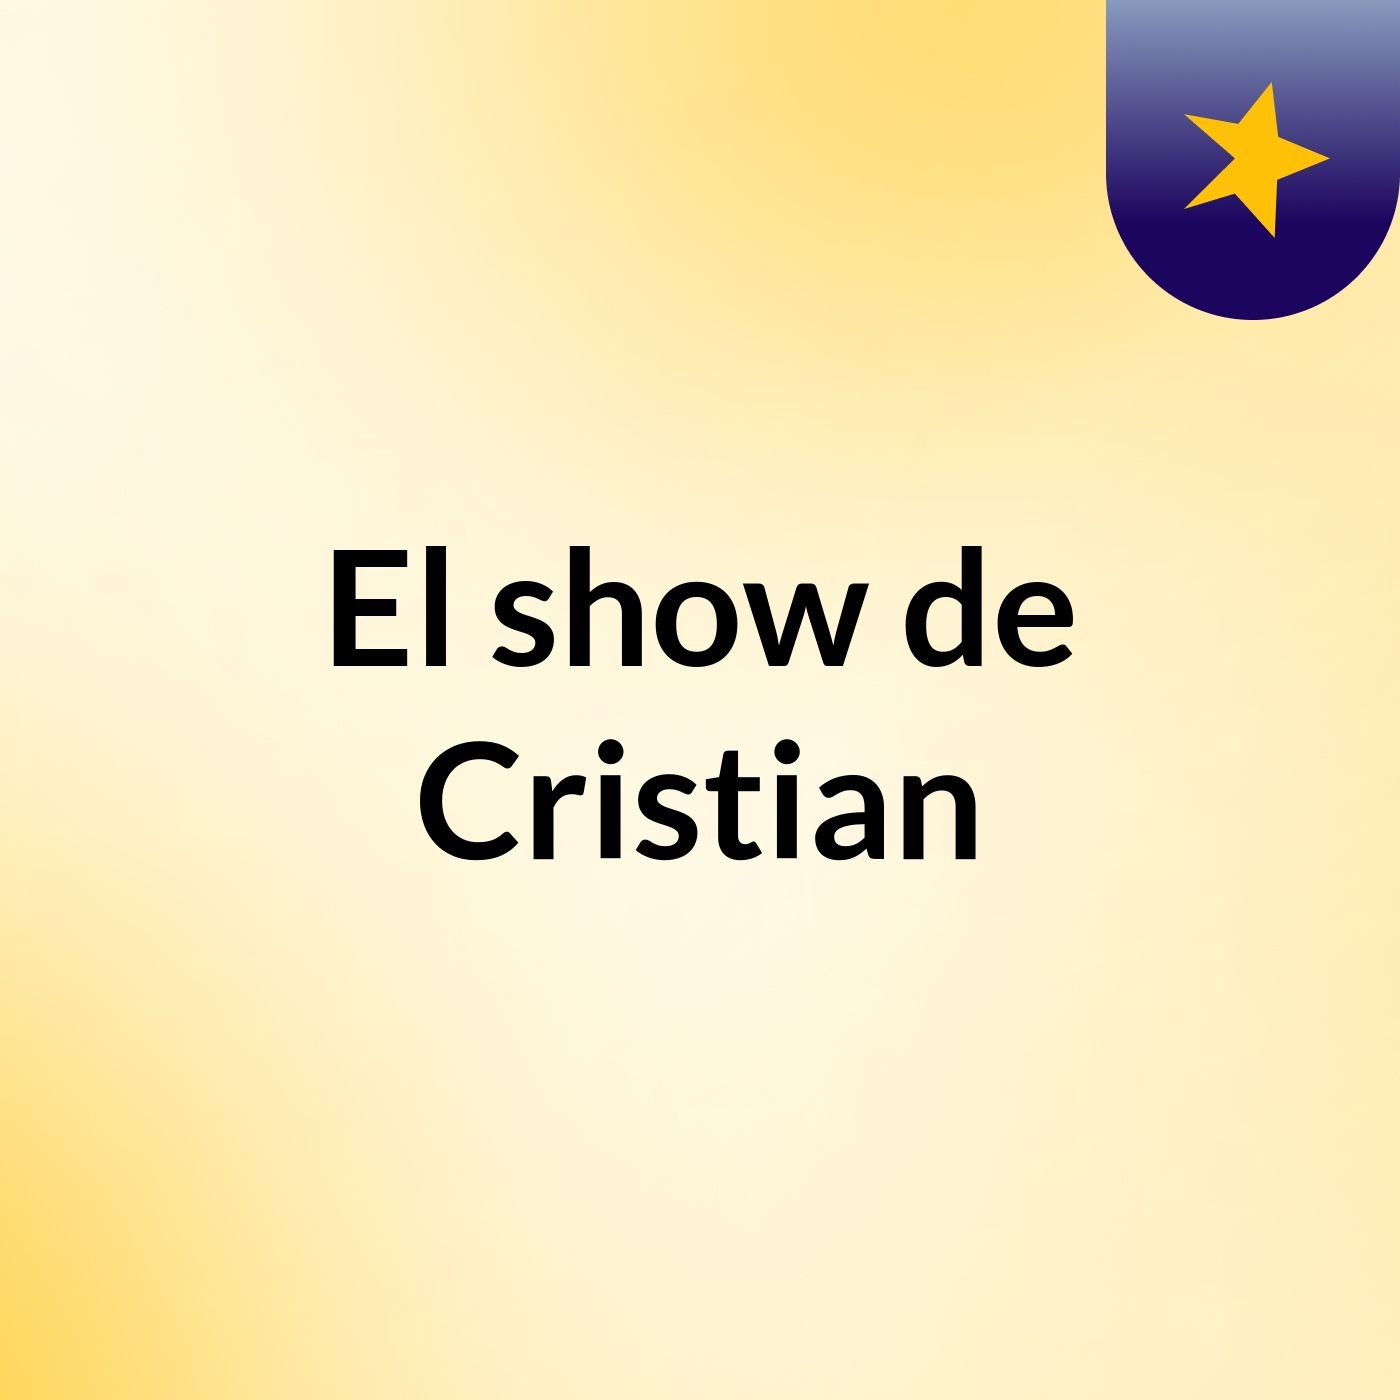 El show de Cristian